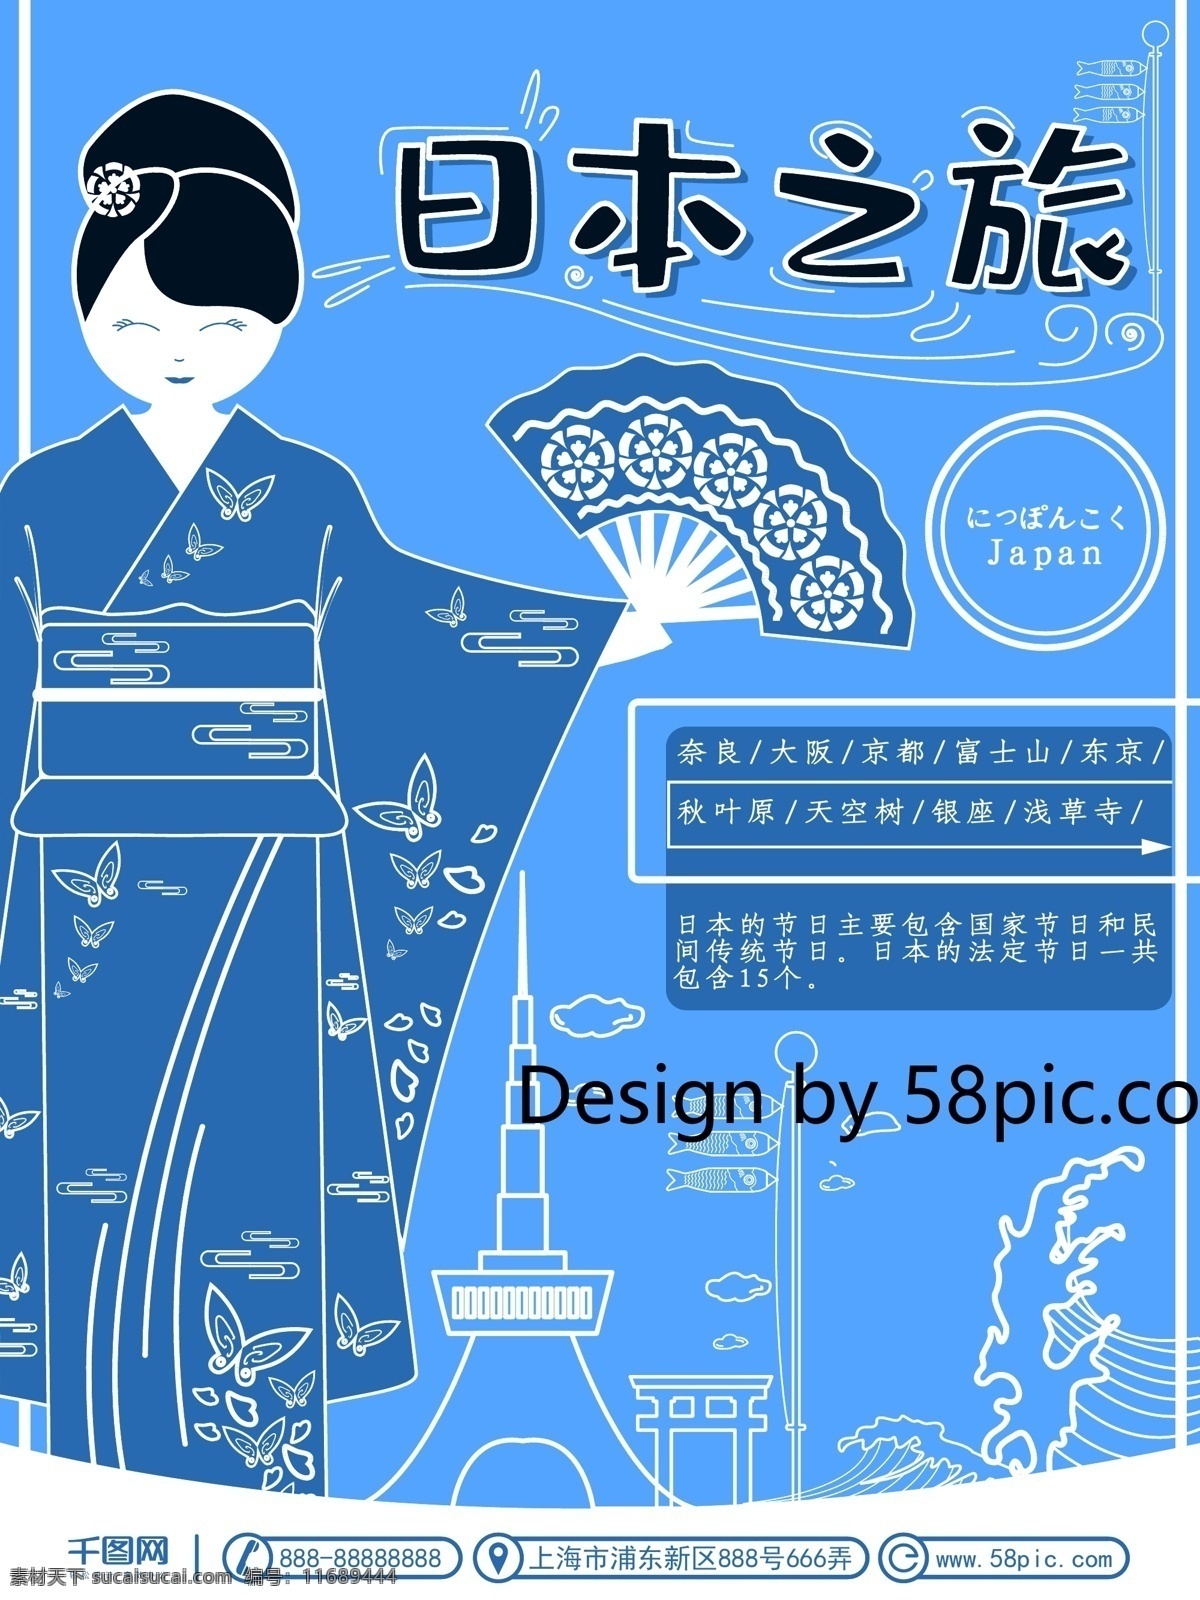 创意 手绘 插画 虚实 象生 日本旅游 海报 可商用 虚实象生 日本旅游海报